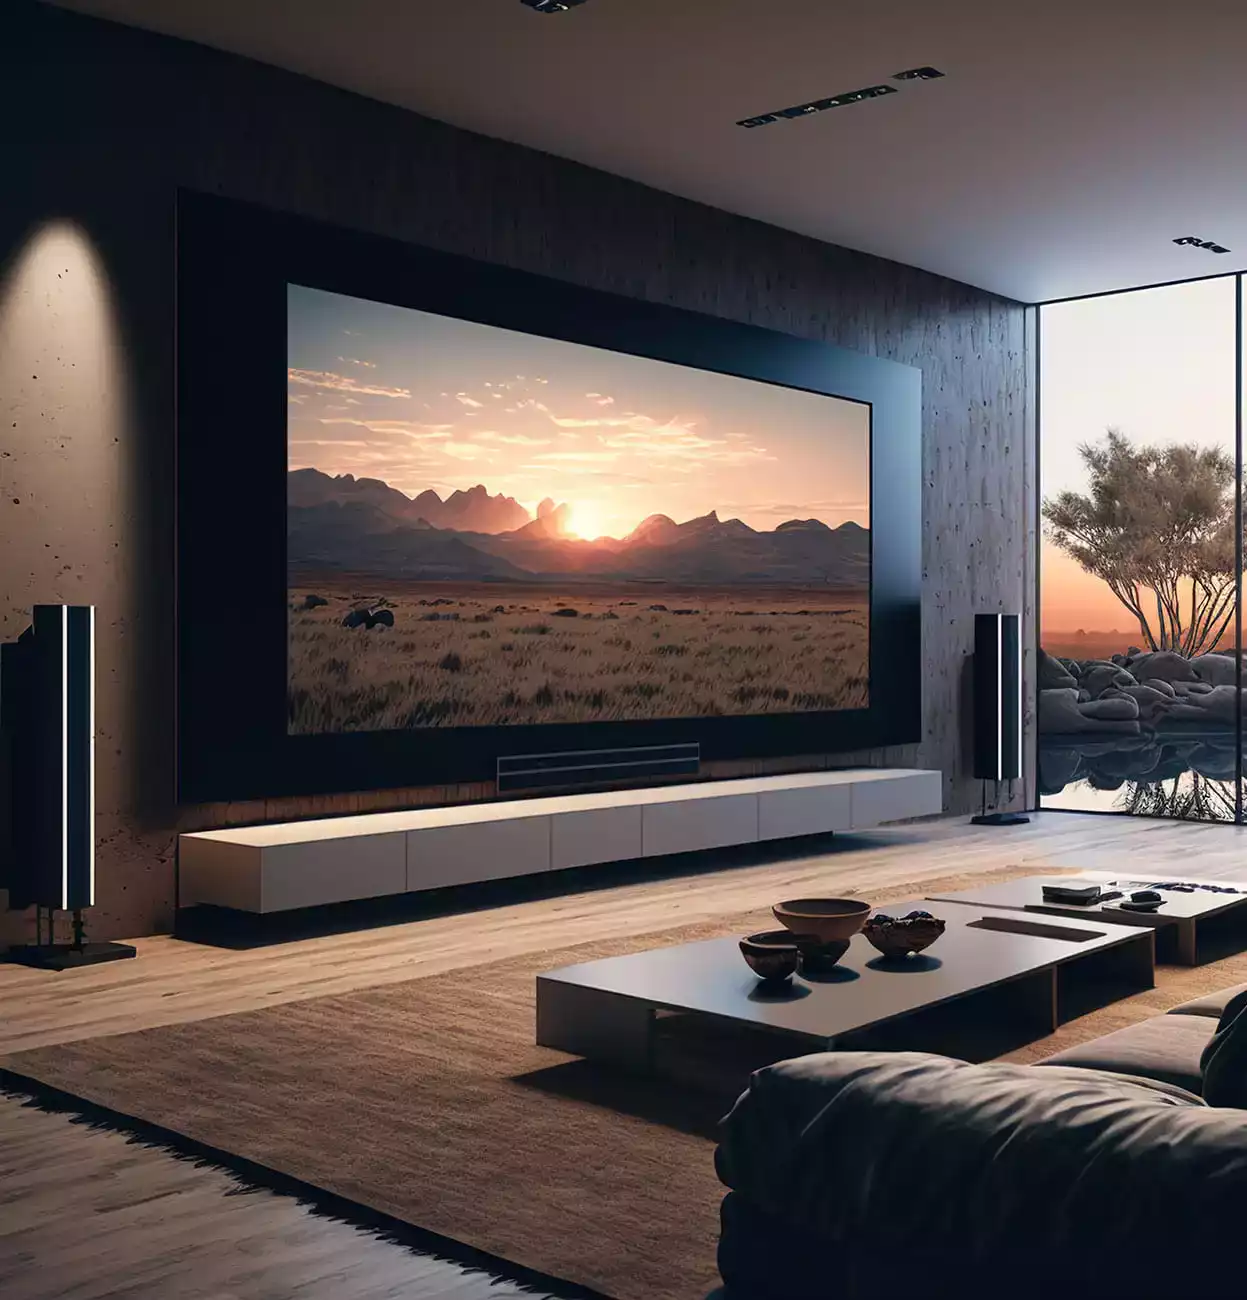 Μια τεράστια οθόνη τηλεόρασης στον τοίχο ενός σαλονιού και ηχεία δίπλα της, σε σπίτι.